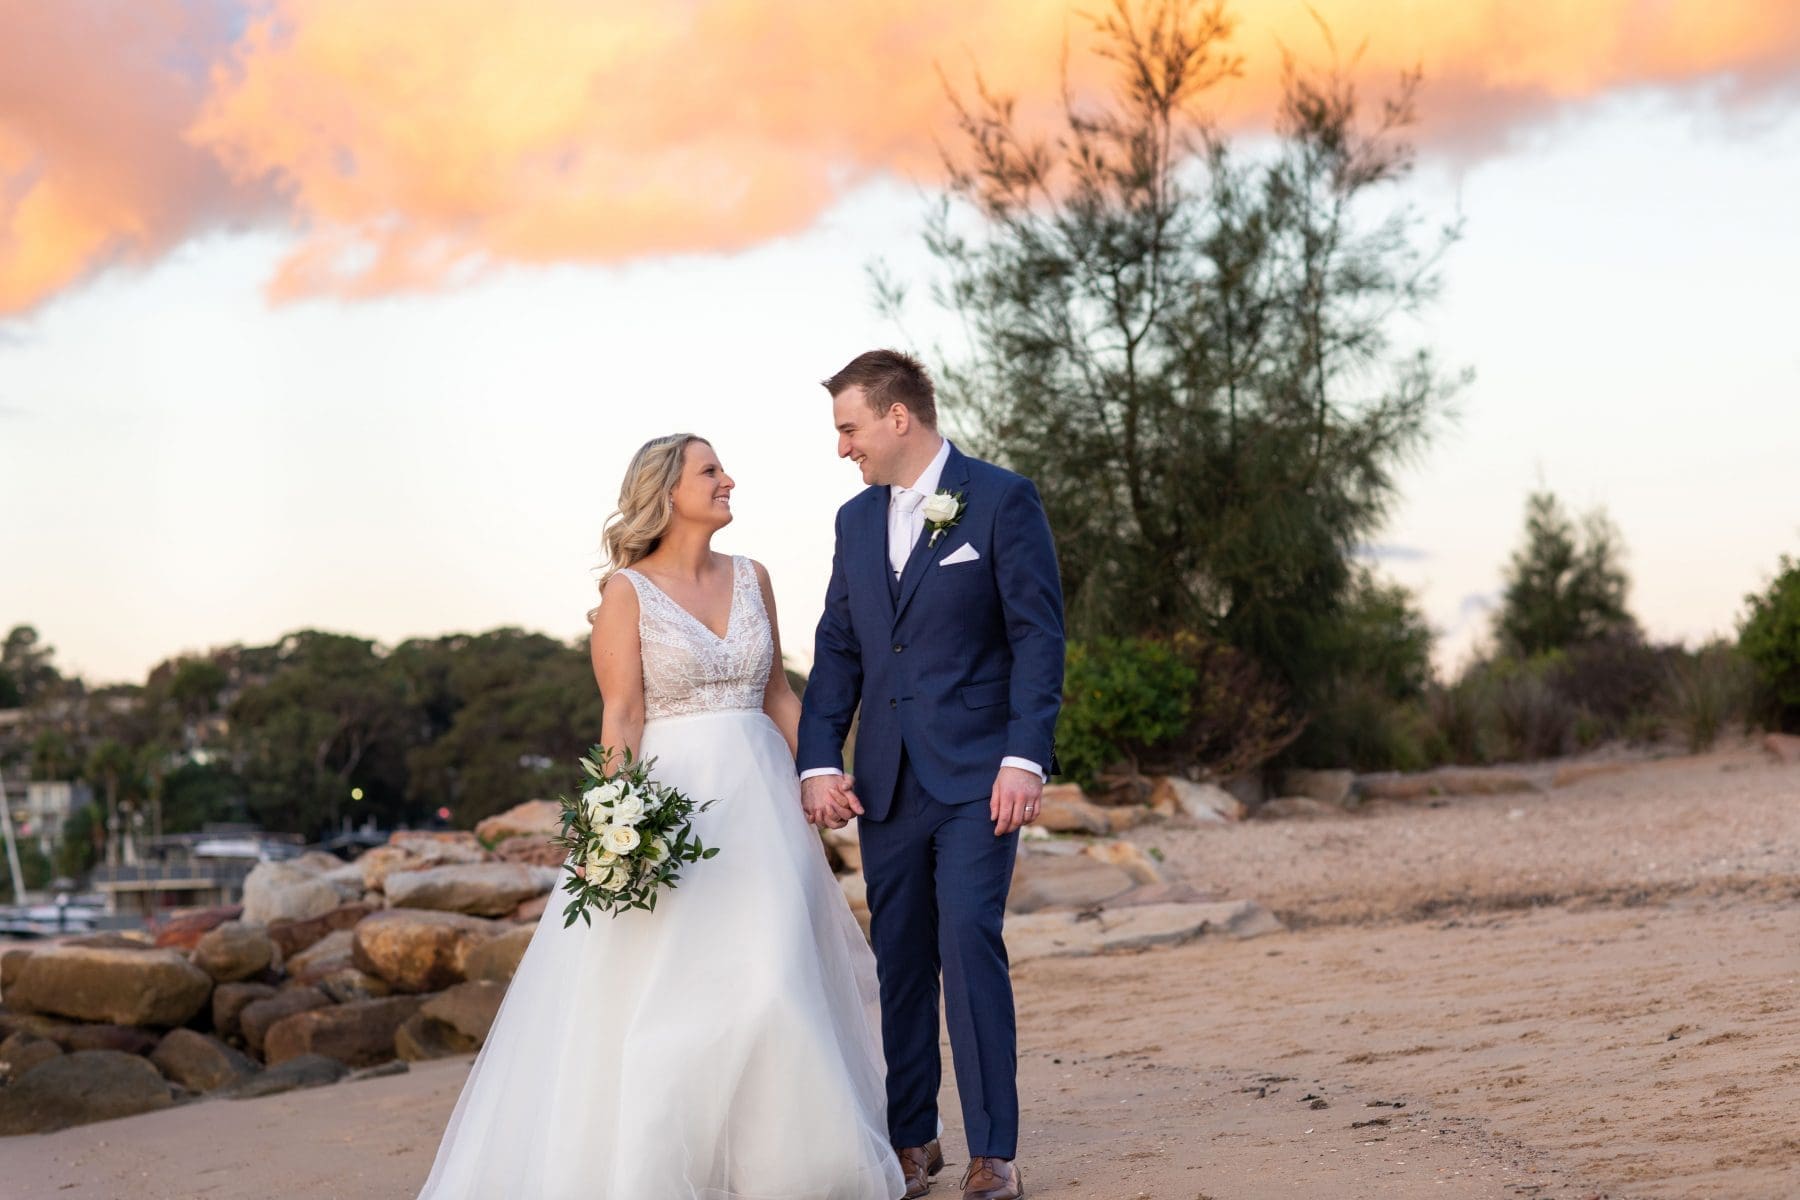 Sydney wedding ideas - bride and groom with a plan B